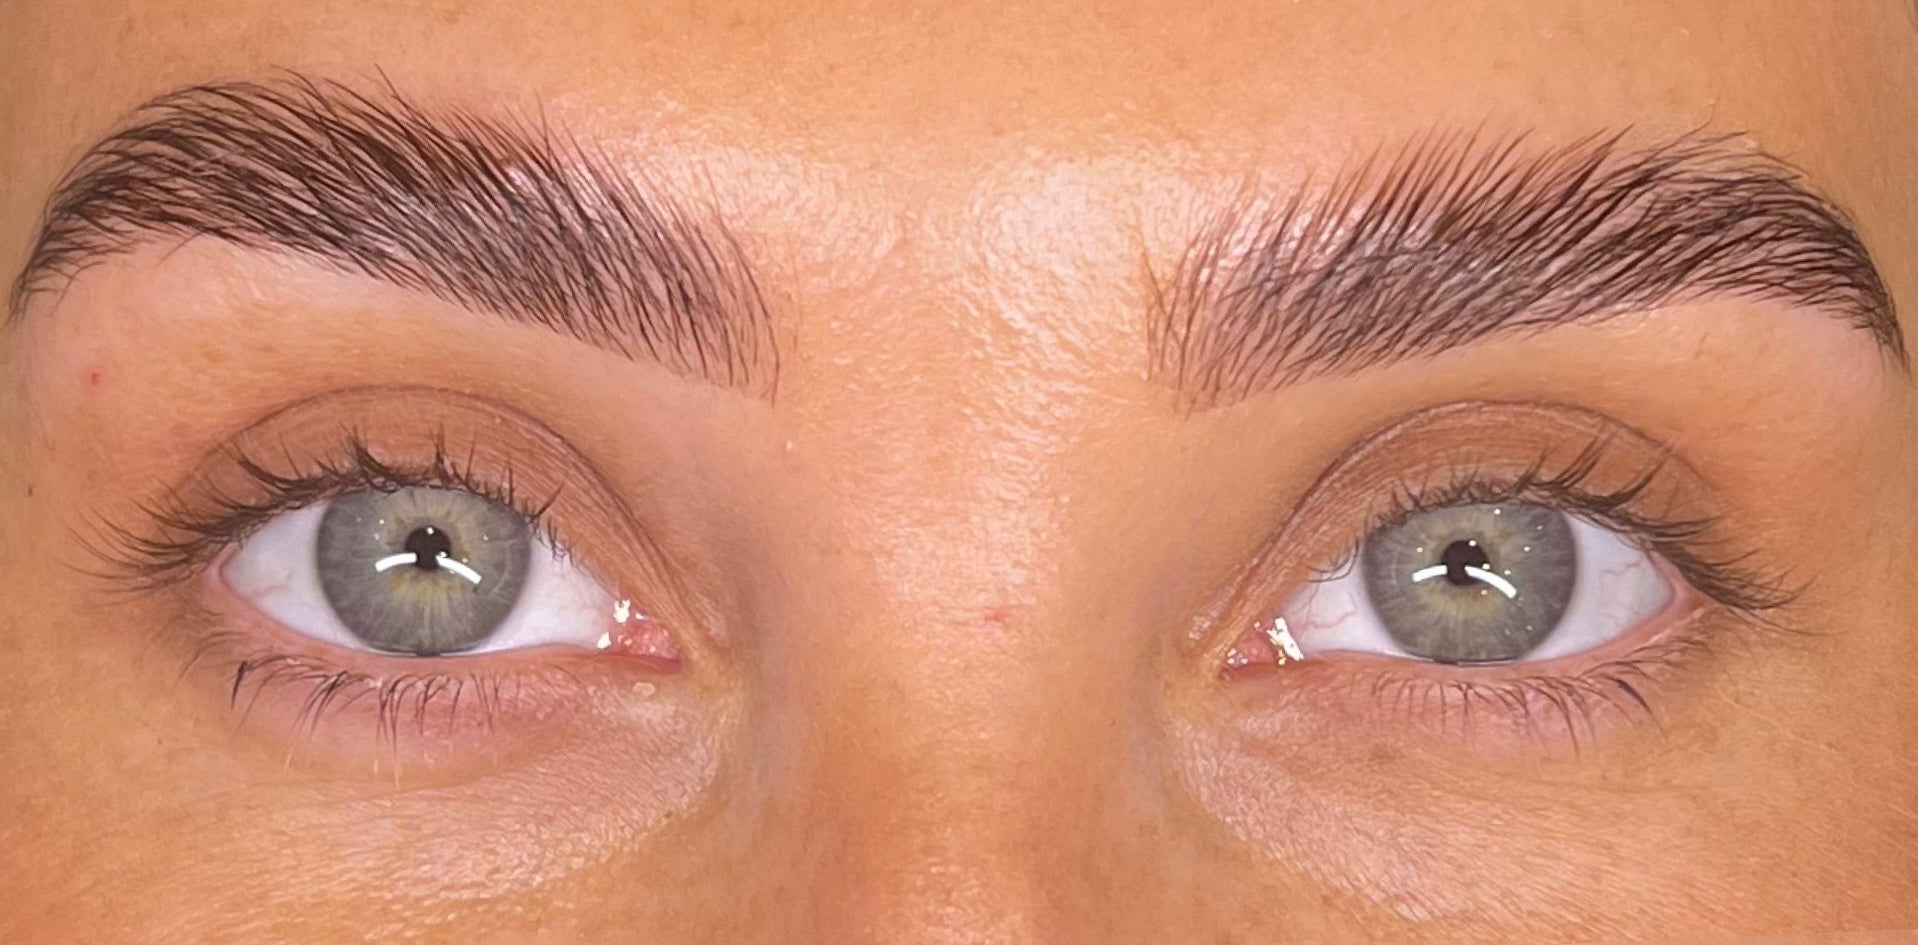 Eyelashes before using Purely Lashes Eye Lash Growth Serum